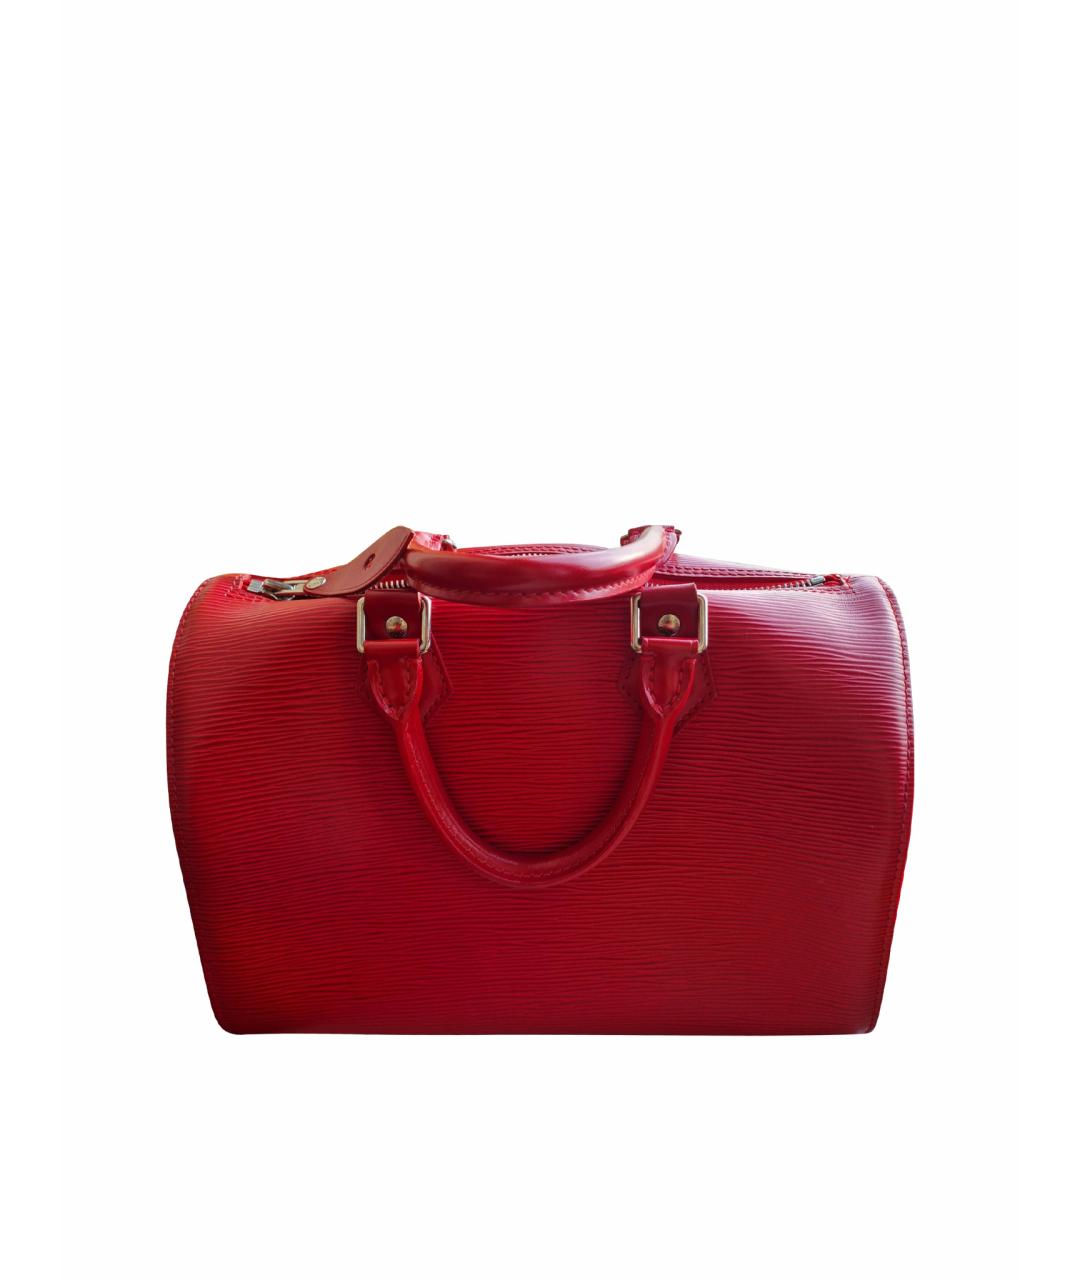 LOUIS VUITTON Красная кожаная сумка с короткими ручками, фото 1